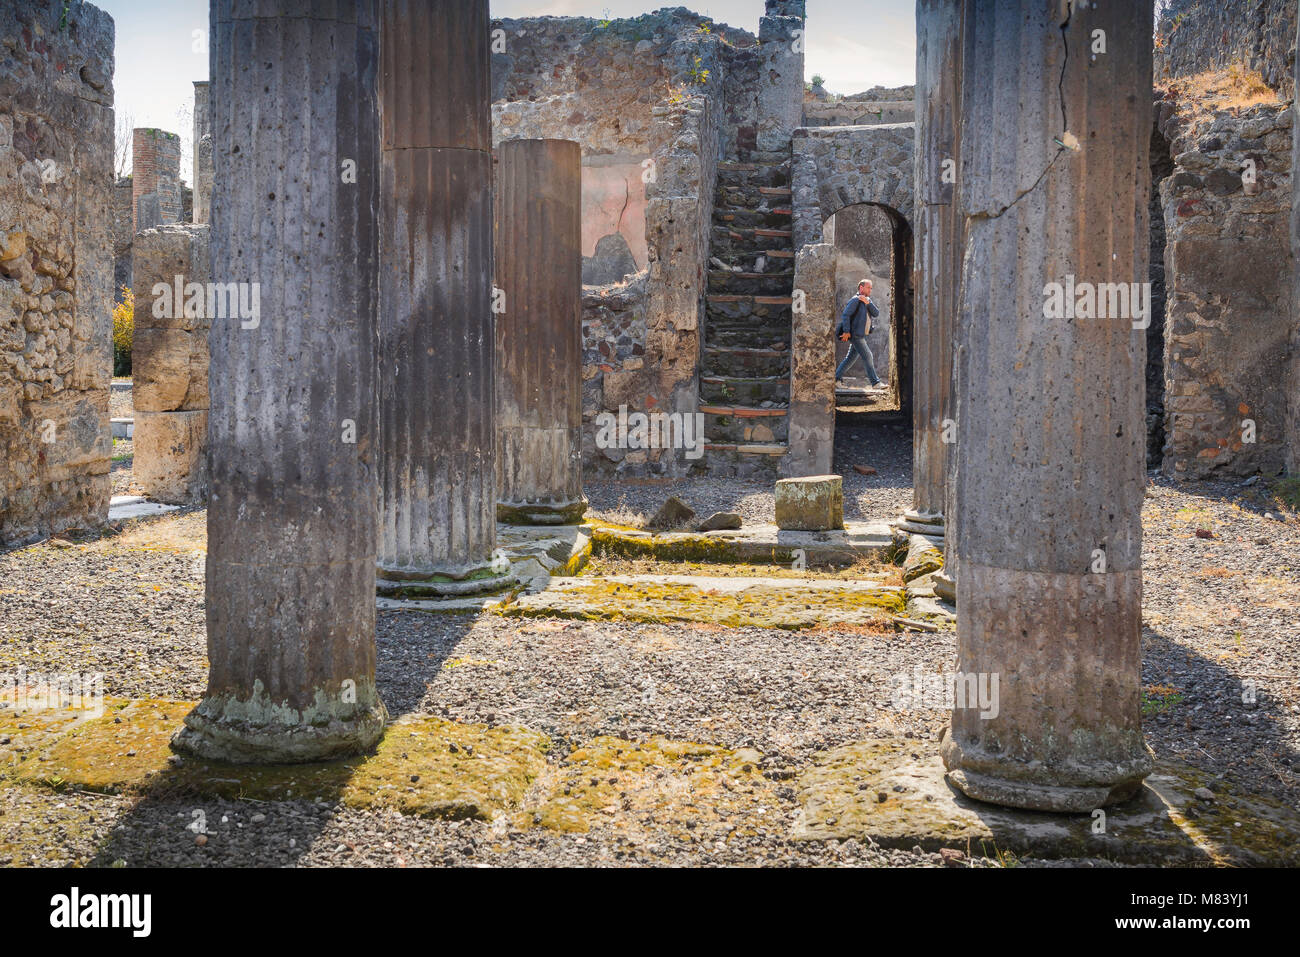 Ruinen von Pompeji, Blick in das Innere einer alten römischen Villa mit einem Touristen zu Fuß auf der Straße außerhalb des Gebäudes, die Bucht von Neapel, Italien. Stockfoto